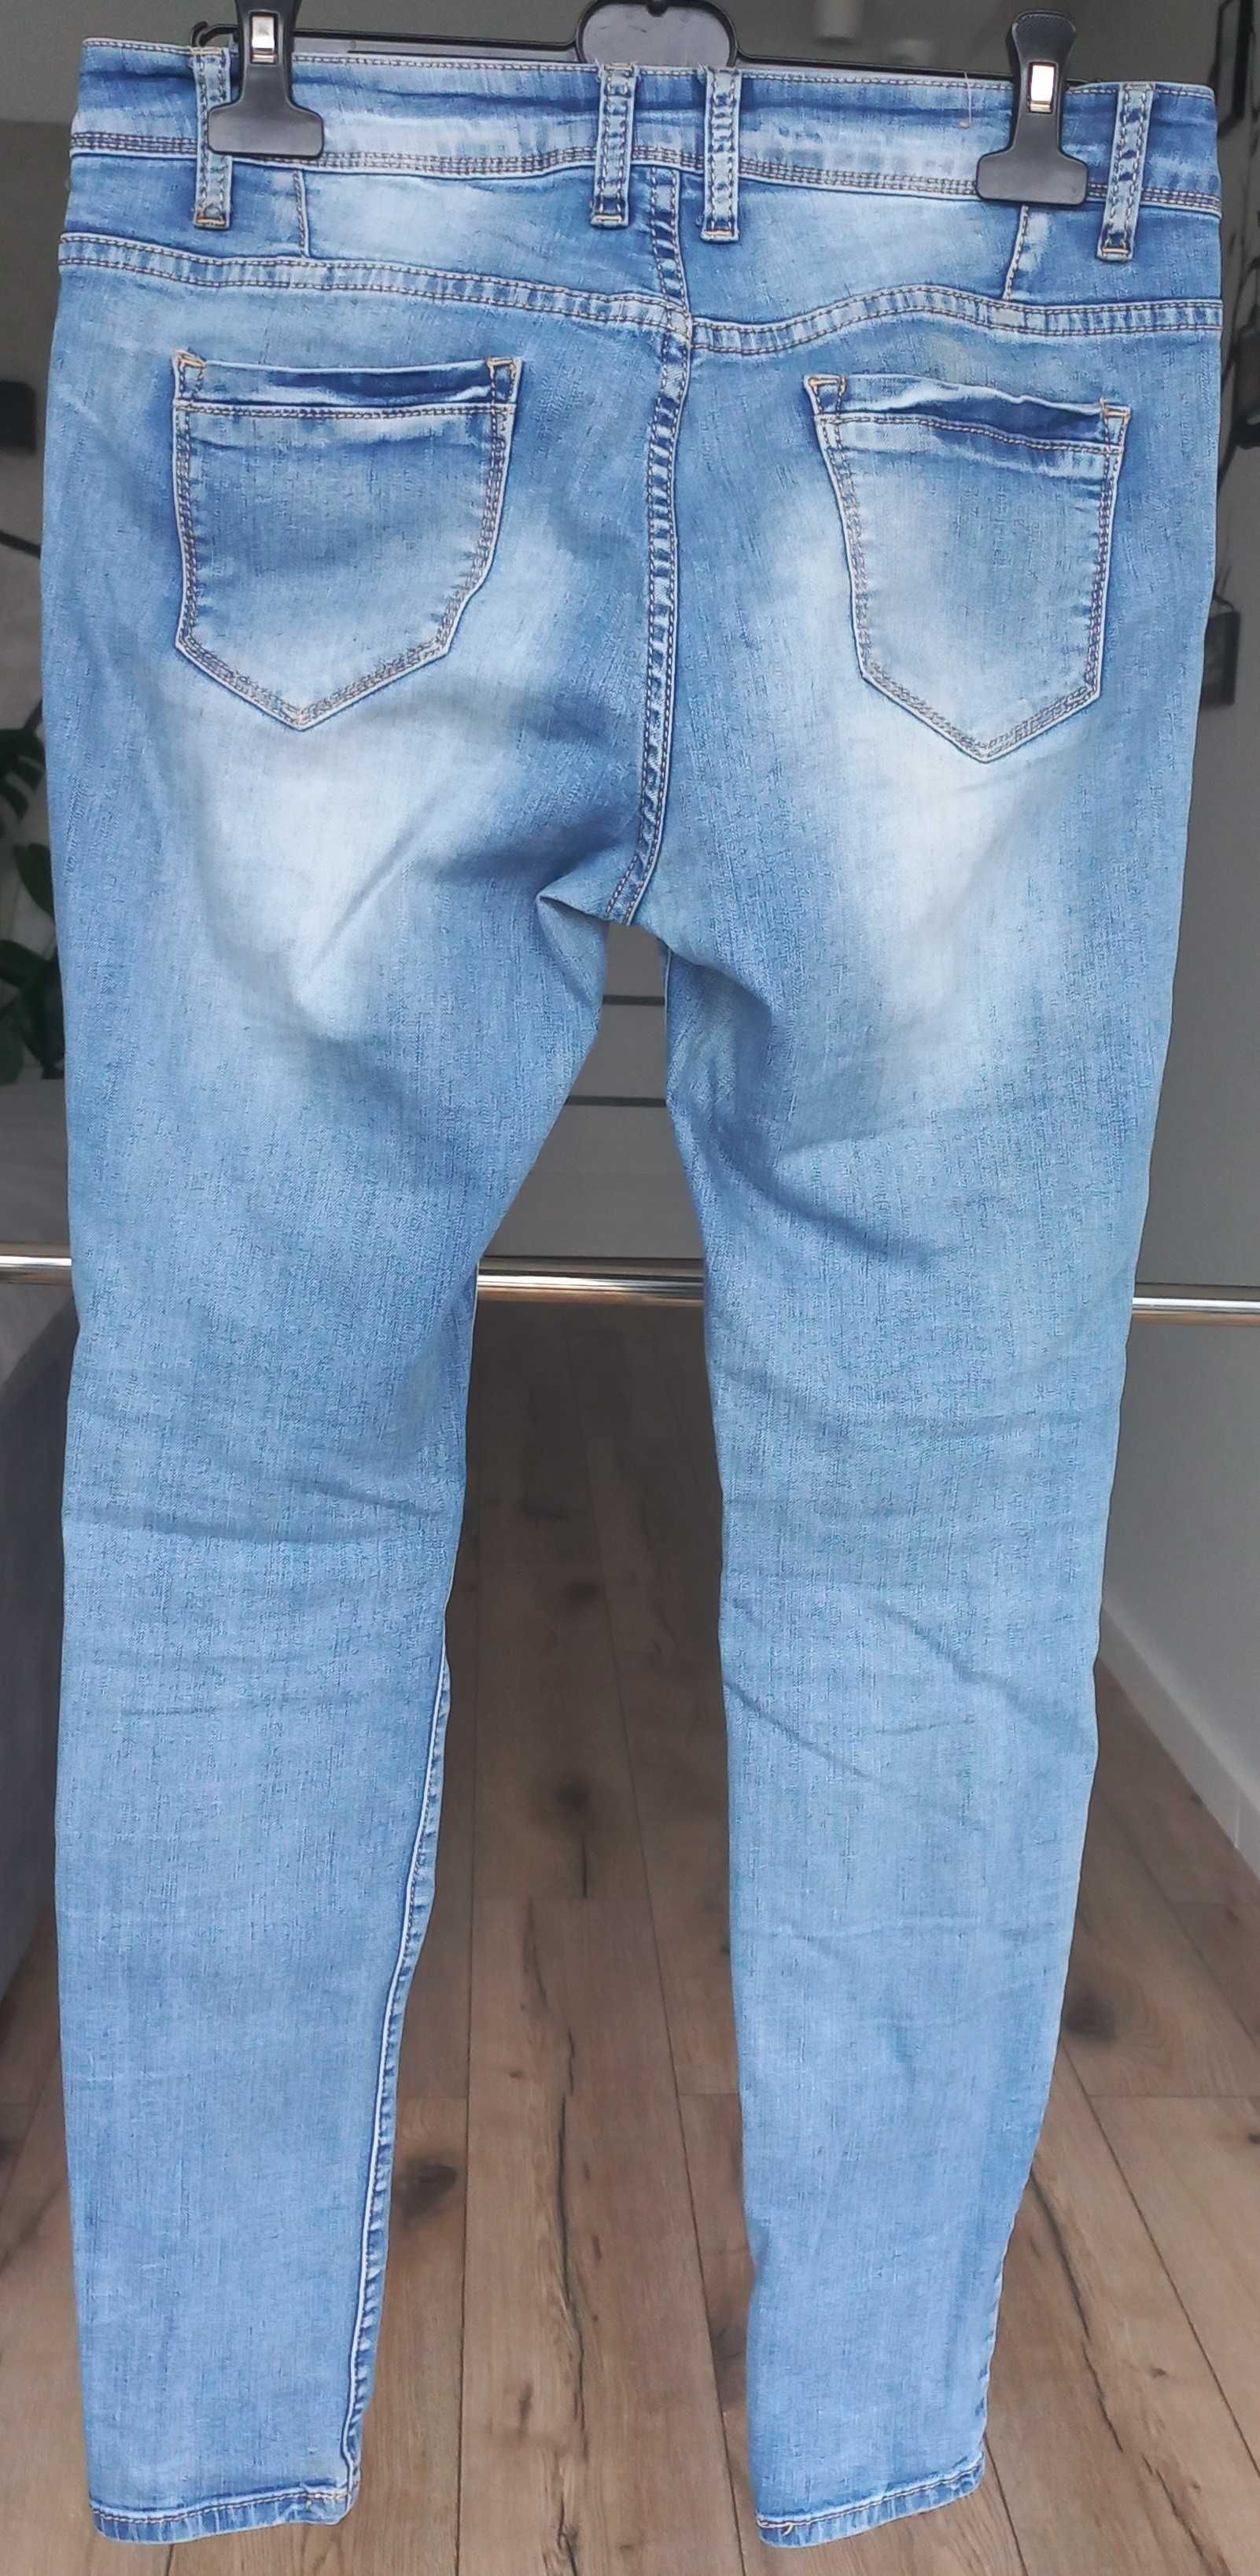 Spodnie jeanoswe dżinsowe rurki z przecięciami naszywki 38M 29 Grace